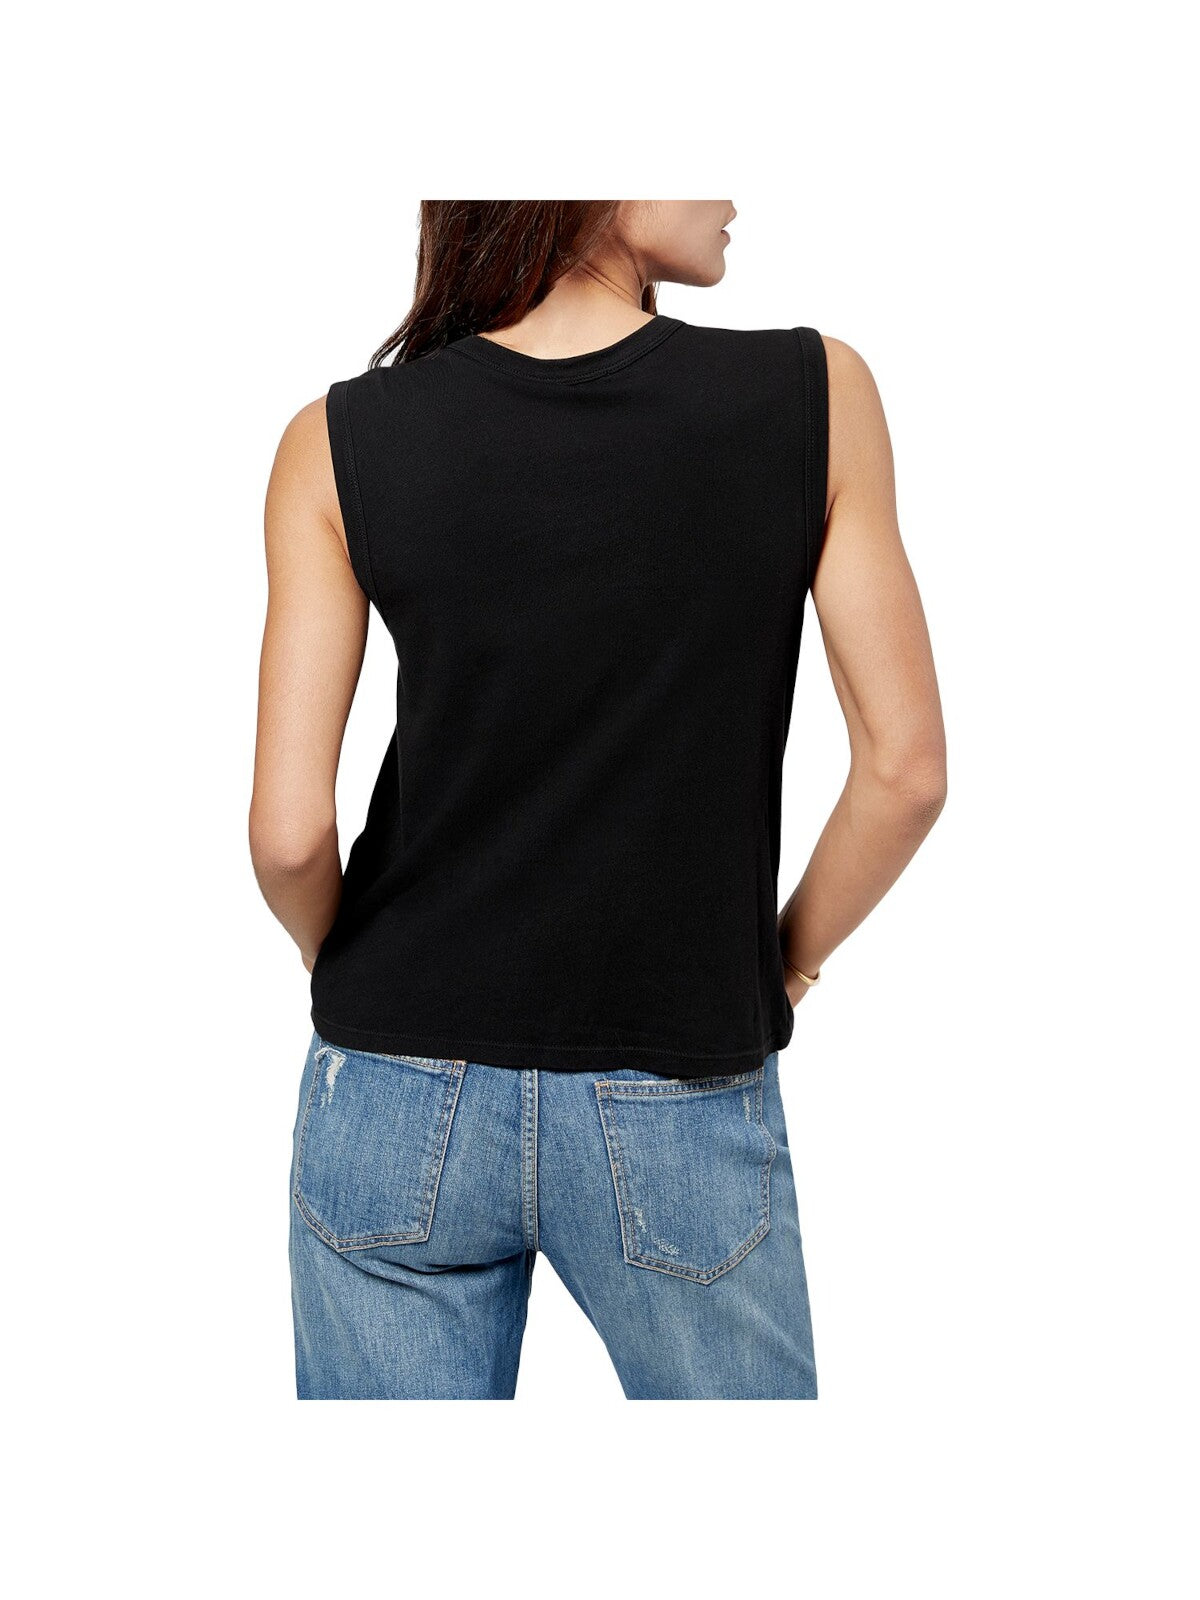 JOIE Womens Black Sleeveless Crew Neck T-Shirt S